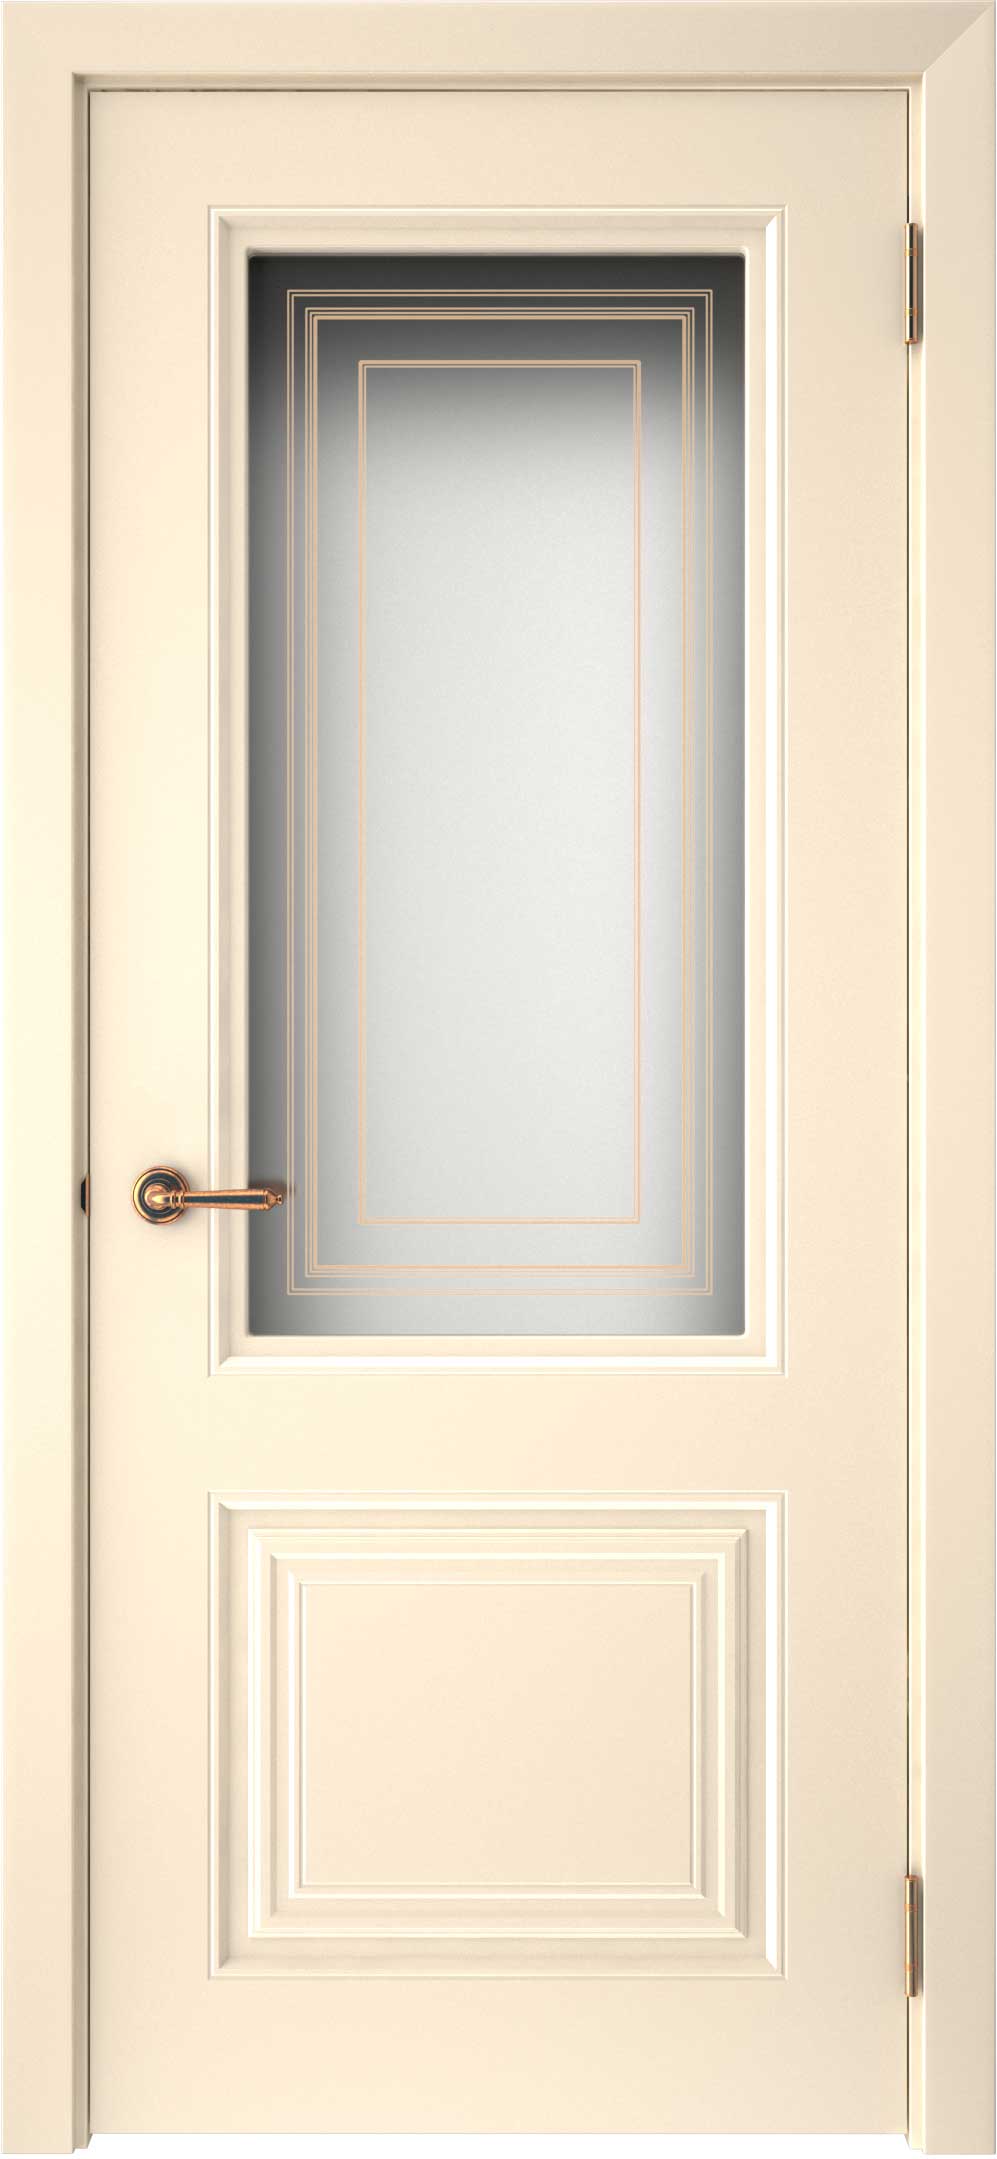 Двери крашеные (Эмаль) ТЕКОНА Смальта-42 со стеклом Ваниль ral размер 200 х 60 см. артикул F0000093298